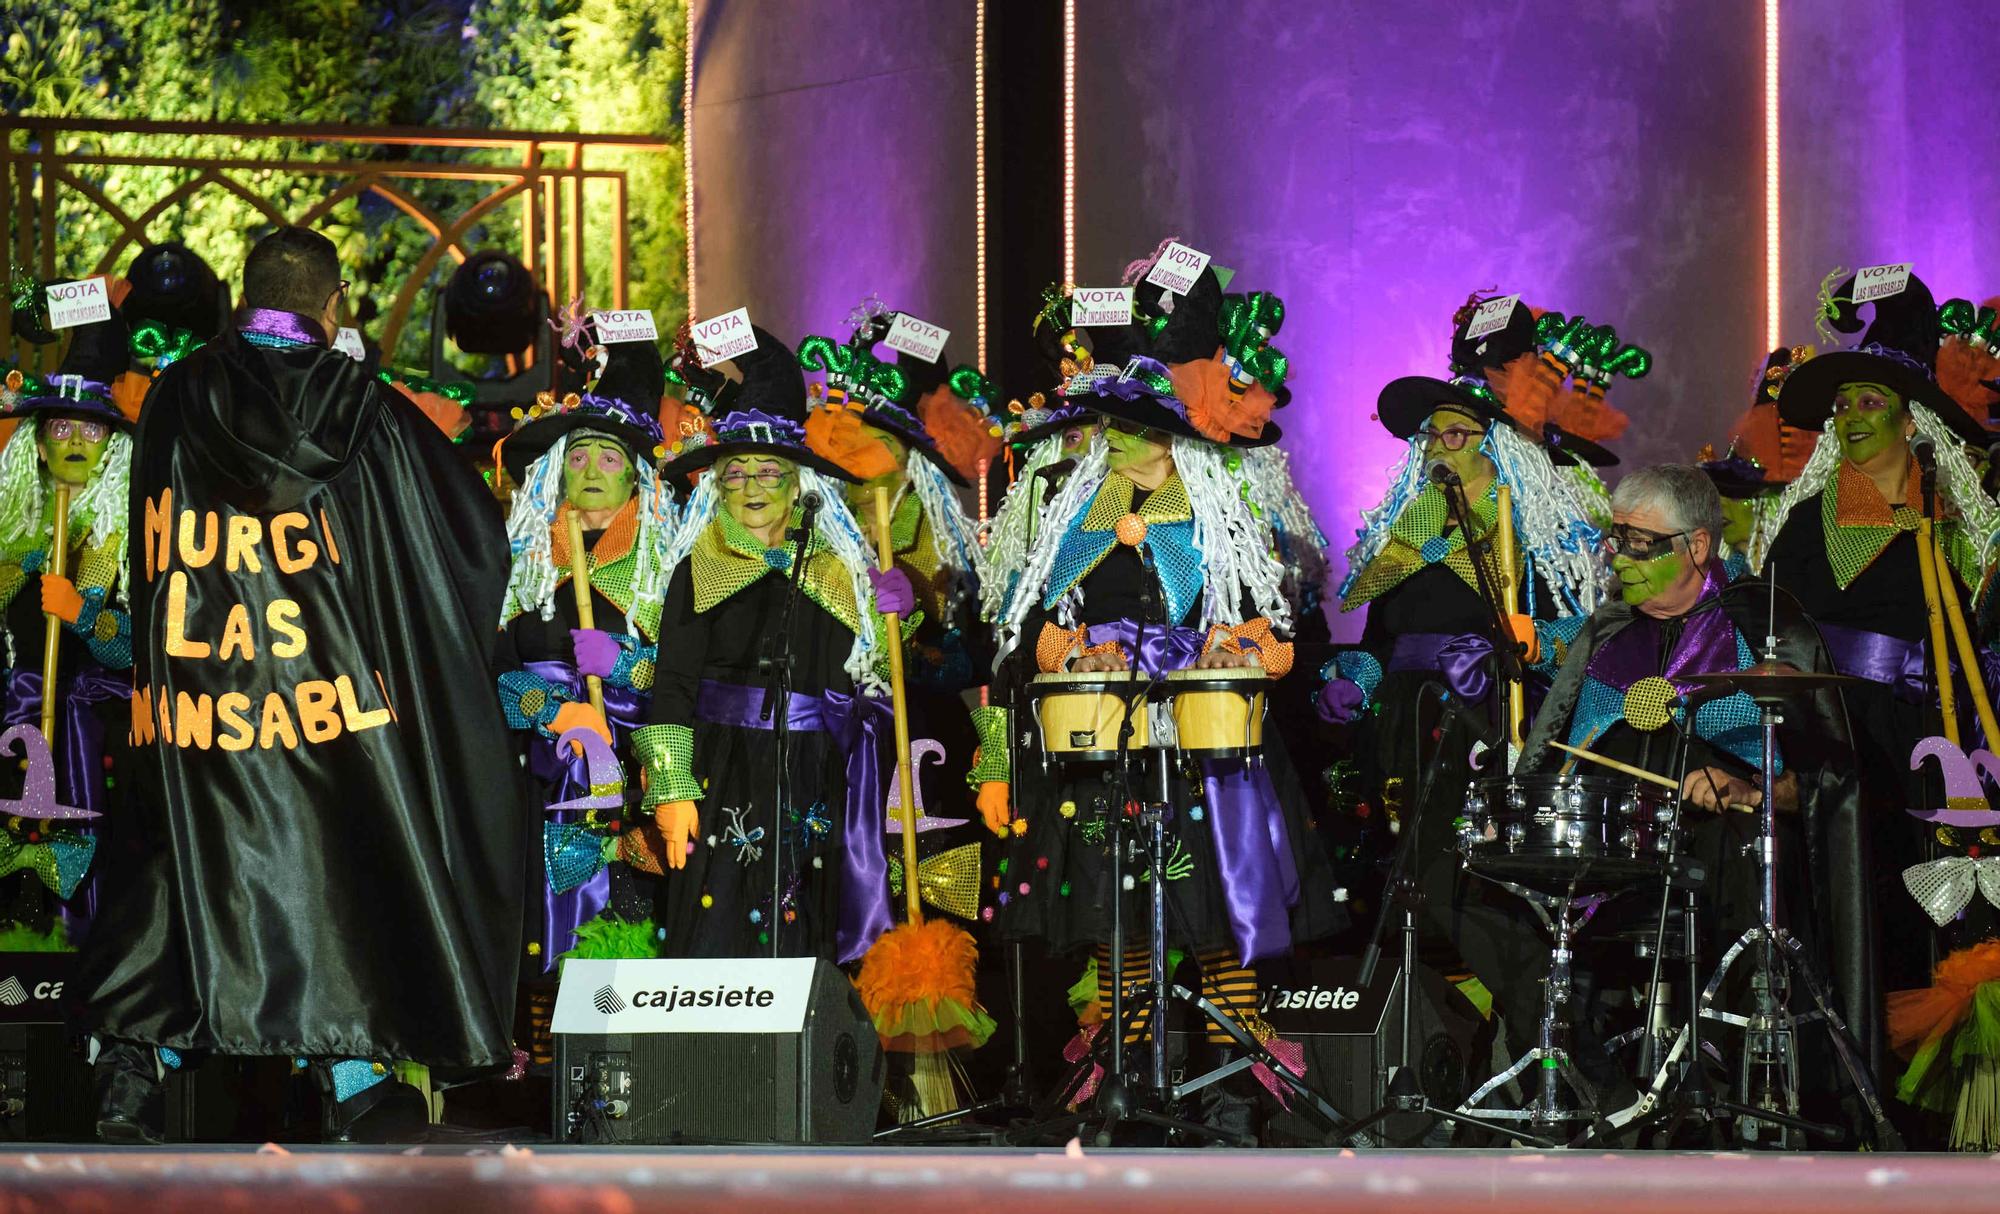 Gala de elección de la reina de los mayores del Carnaval de Santa Cruz de Tenerife 2023